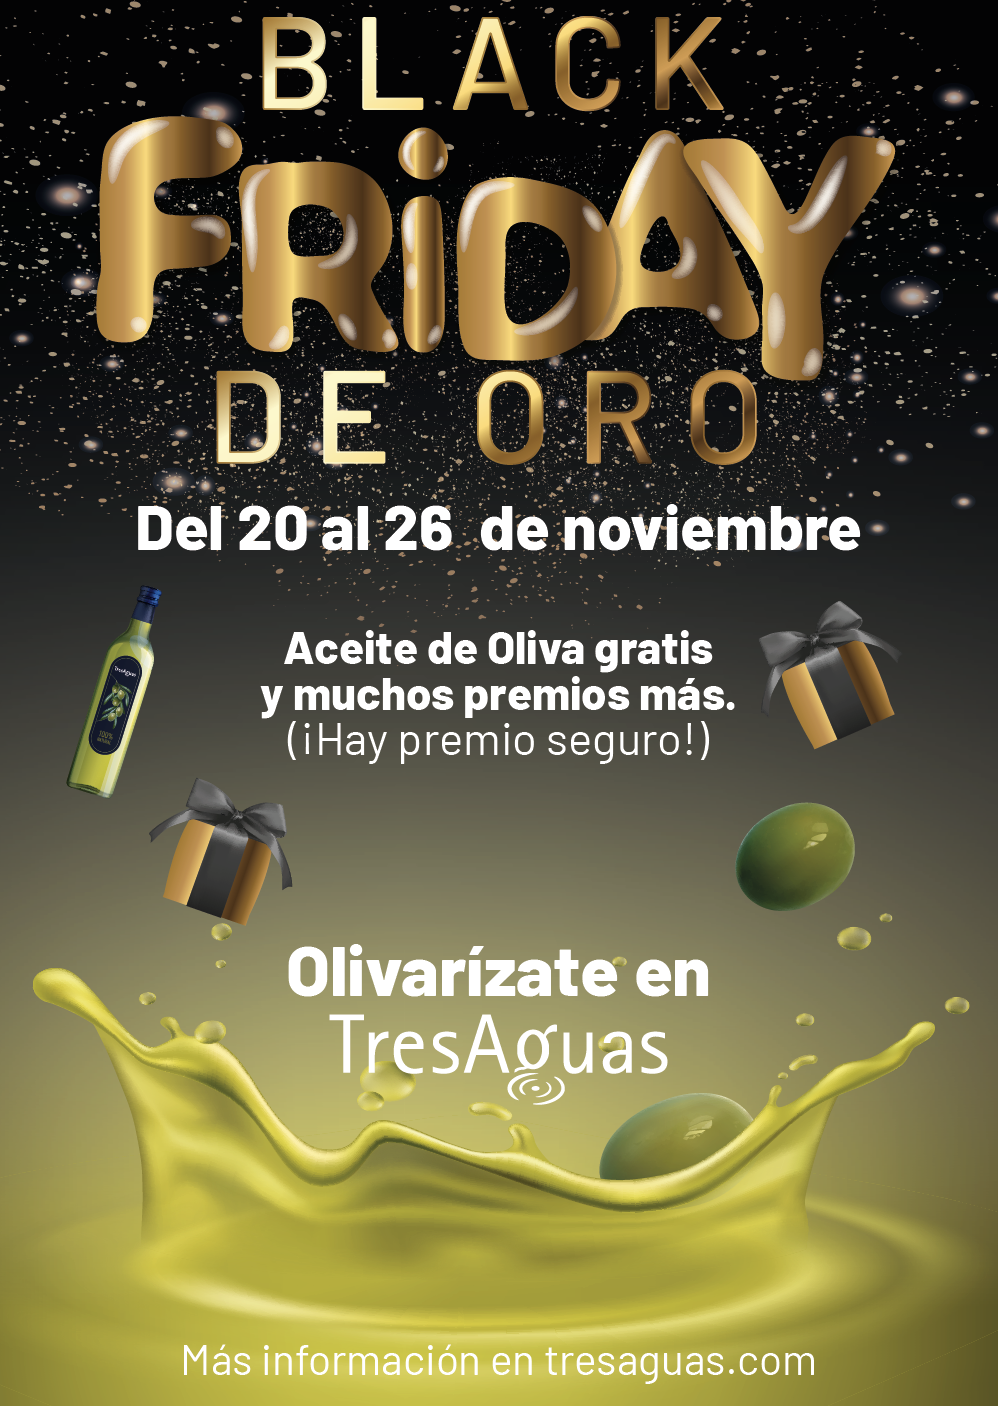 TresAguas organiza un Black Friday de Oro 